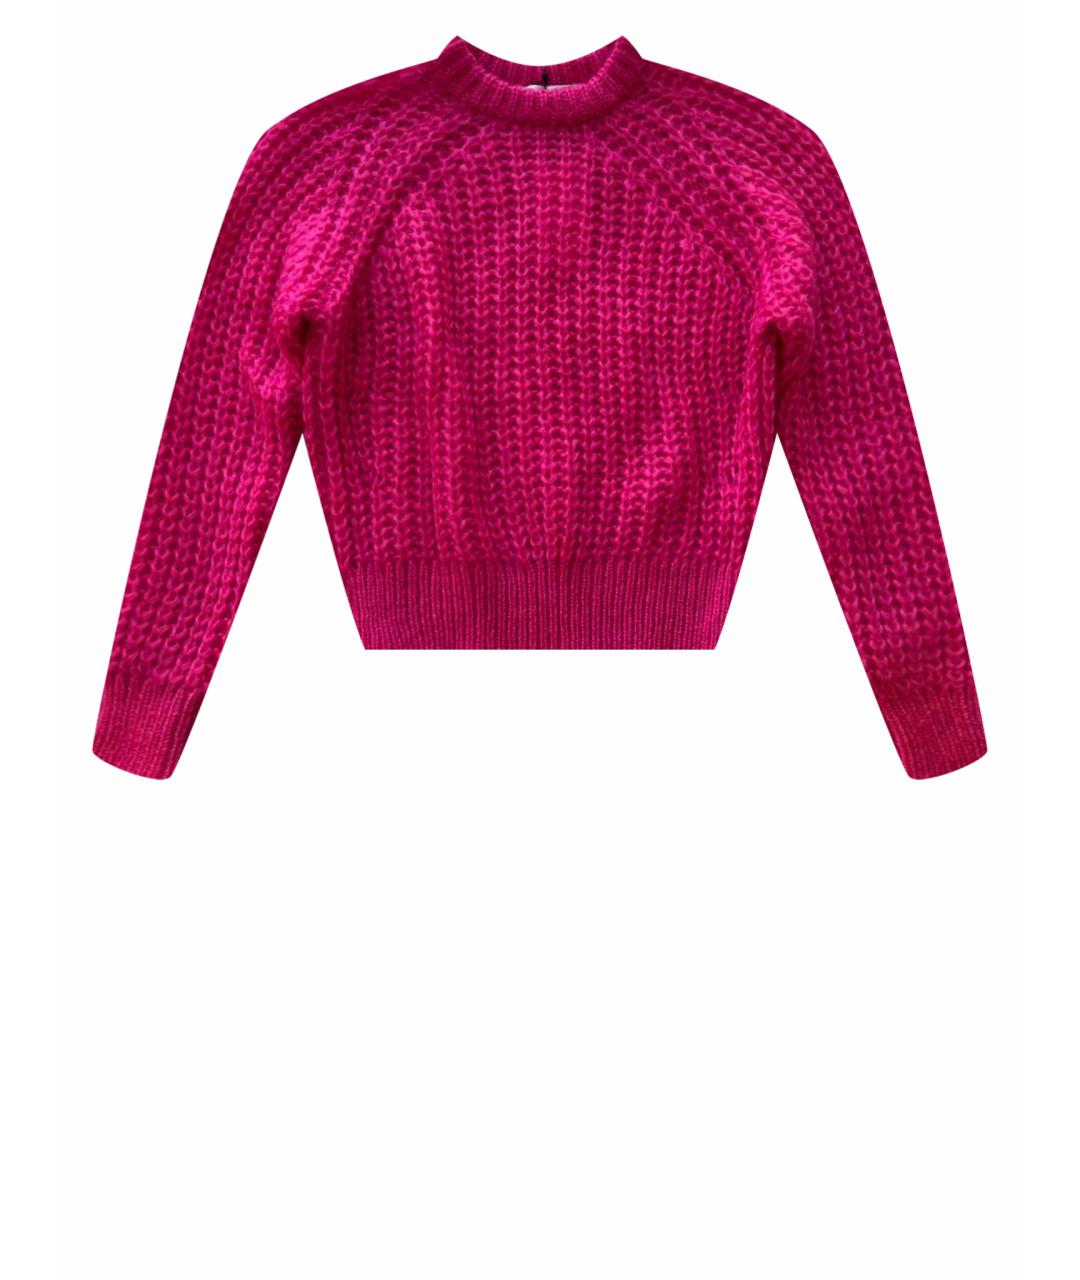 DOROTHEE SCHUMACHER Розовый шерстяной джемпер / свитер, фото 1